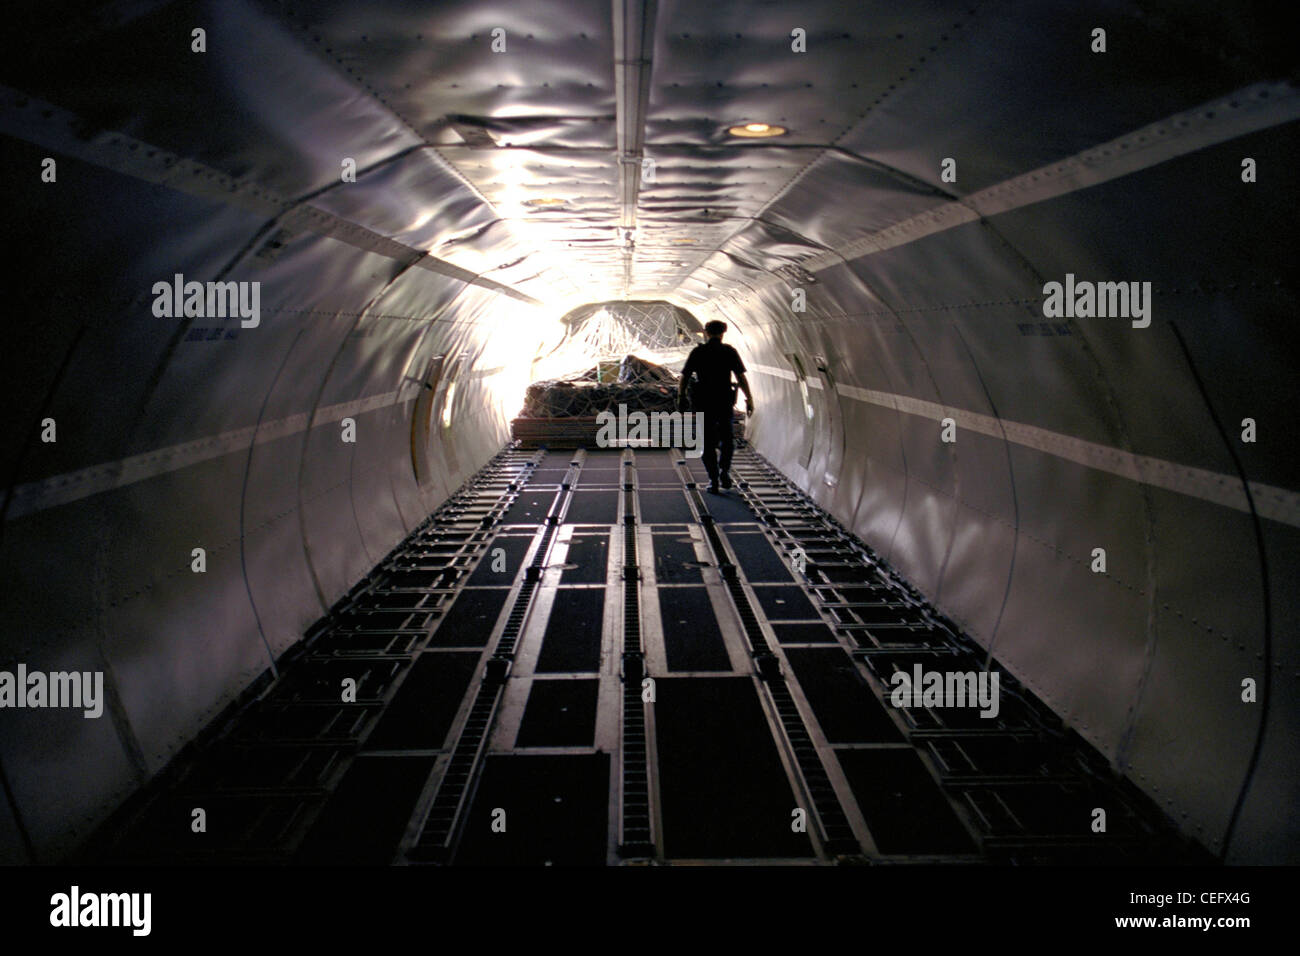 Ein CBP-Officer untersucht das letzte Quentchen Ladung aus einem Flugzeug aus geladen werden. Stockfoto